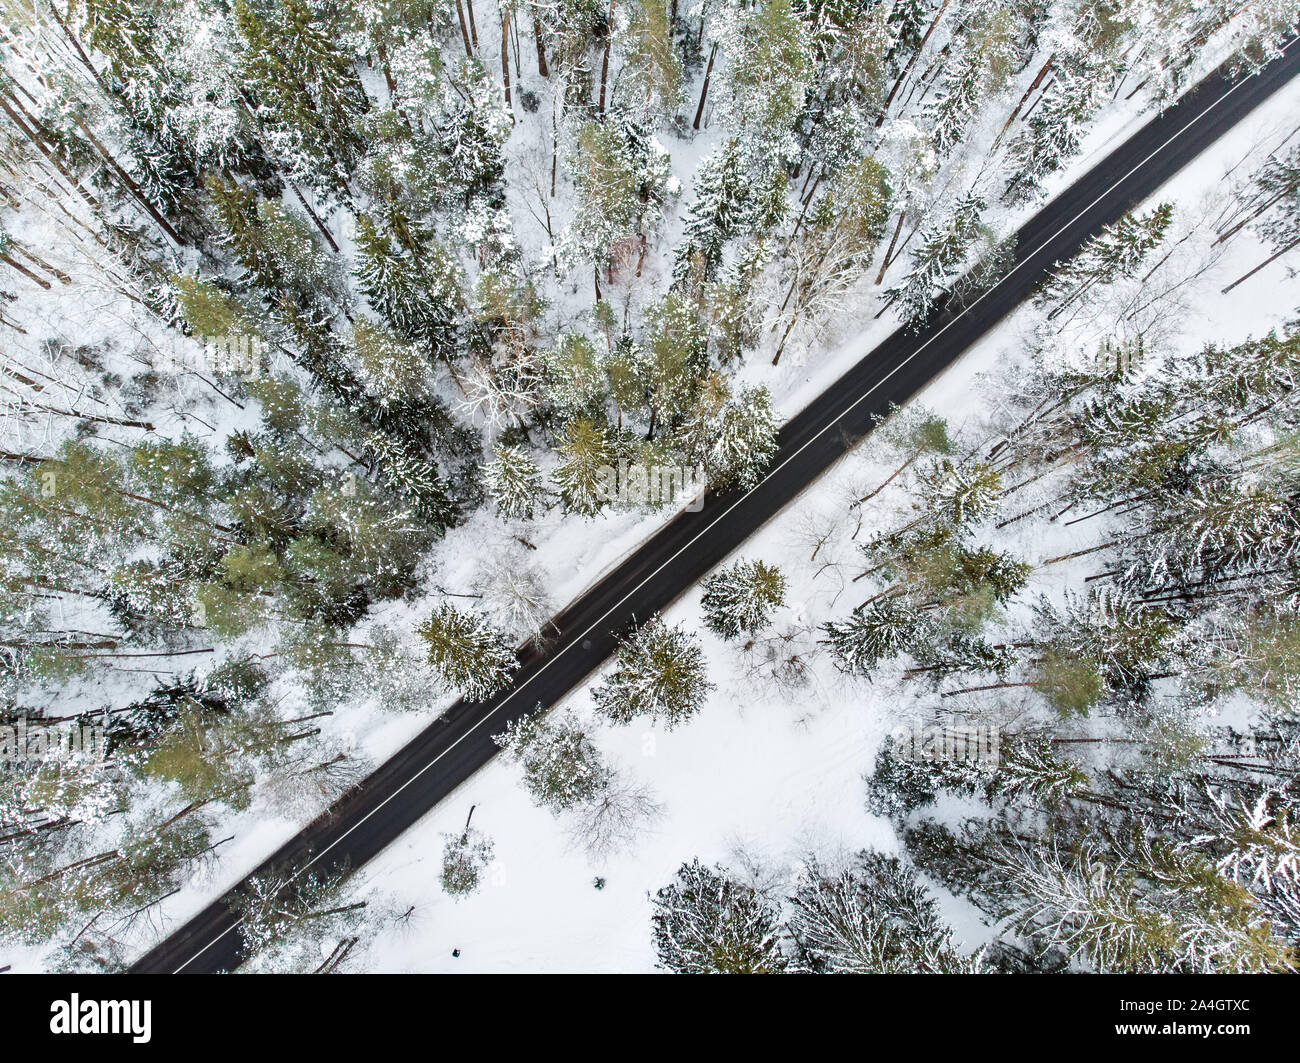 Hermosa vista aérea de bosques de pinos cubiertos de nieve y un camino serpenteante entre árboles. El hielo y la escarcha helada hoar cubriendo los árboles. Pintoresco paisaje de invierno aen Foto de stock